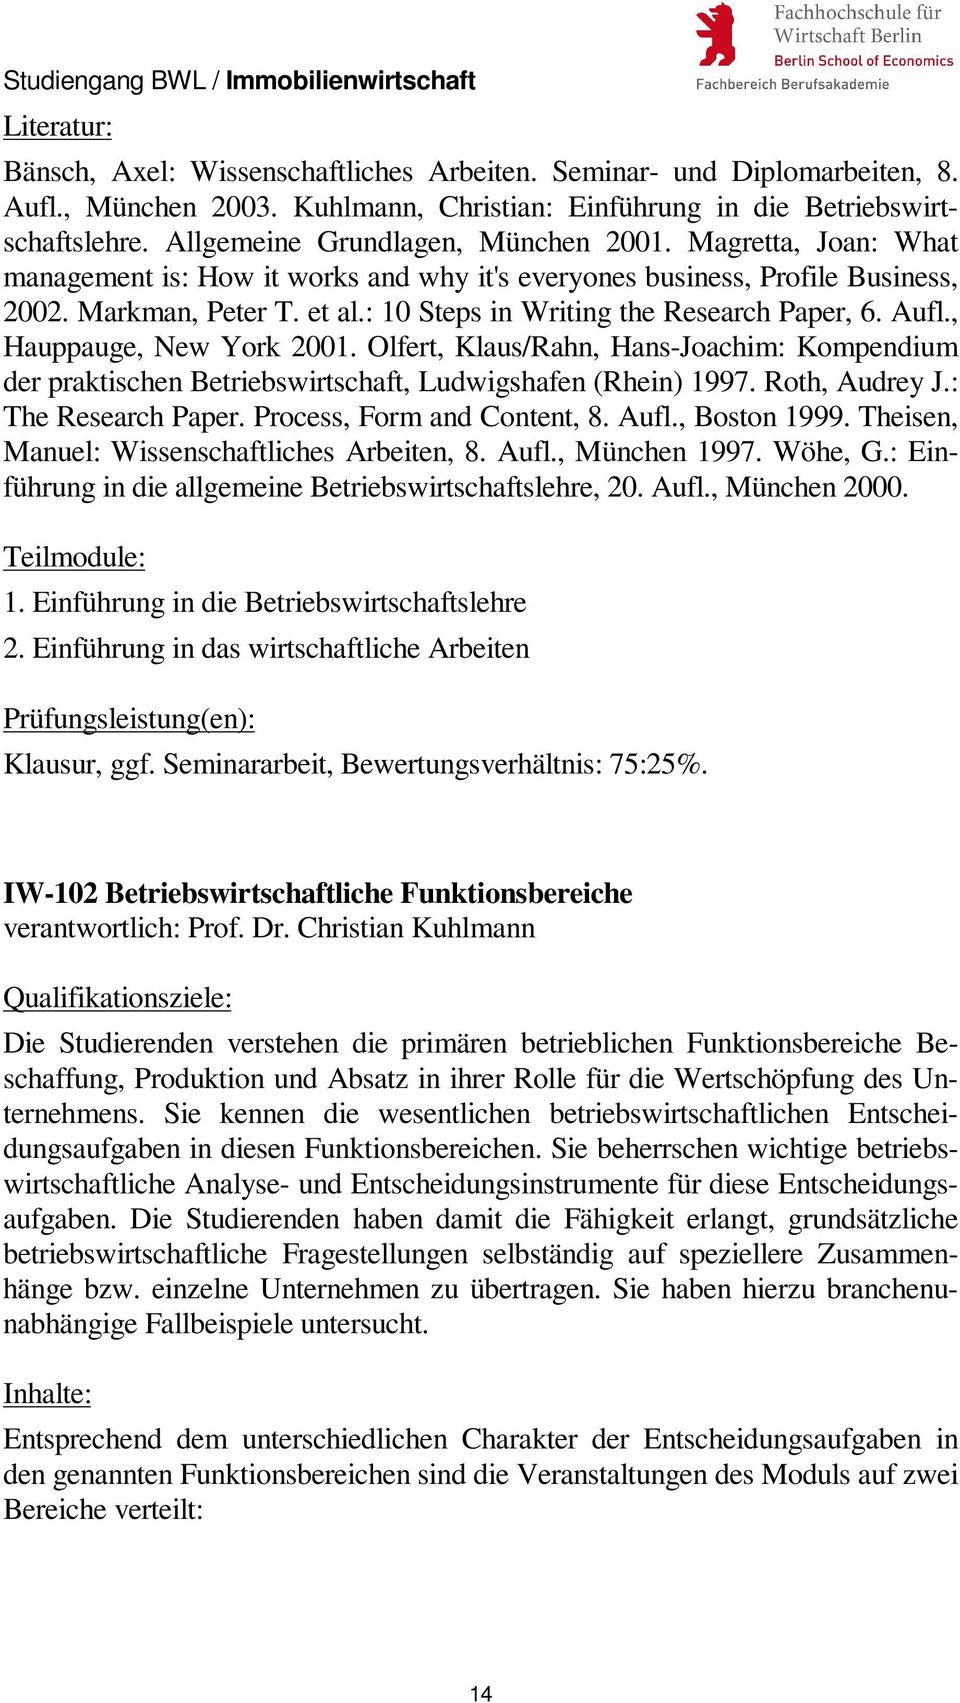 , Hauppauge, New York 2001. Olfert, Klaus/Rahn, Hans-Joachim: Kompendium der praktischen Betriebswirtschaft, Ludwigshafen (Rhein) 1997. Roth, Audrey J.: The Research Paper.